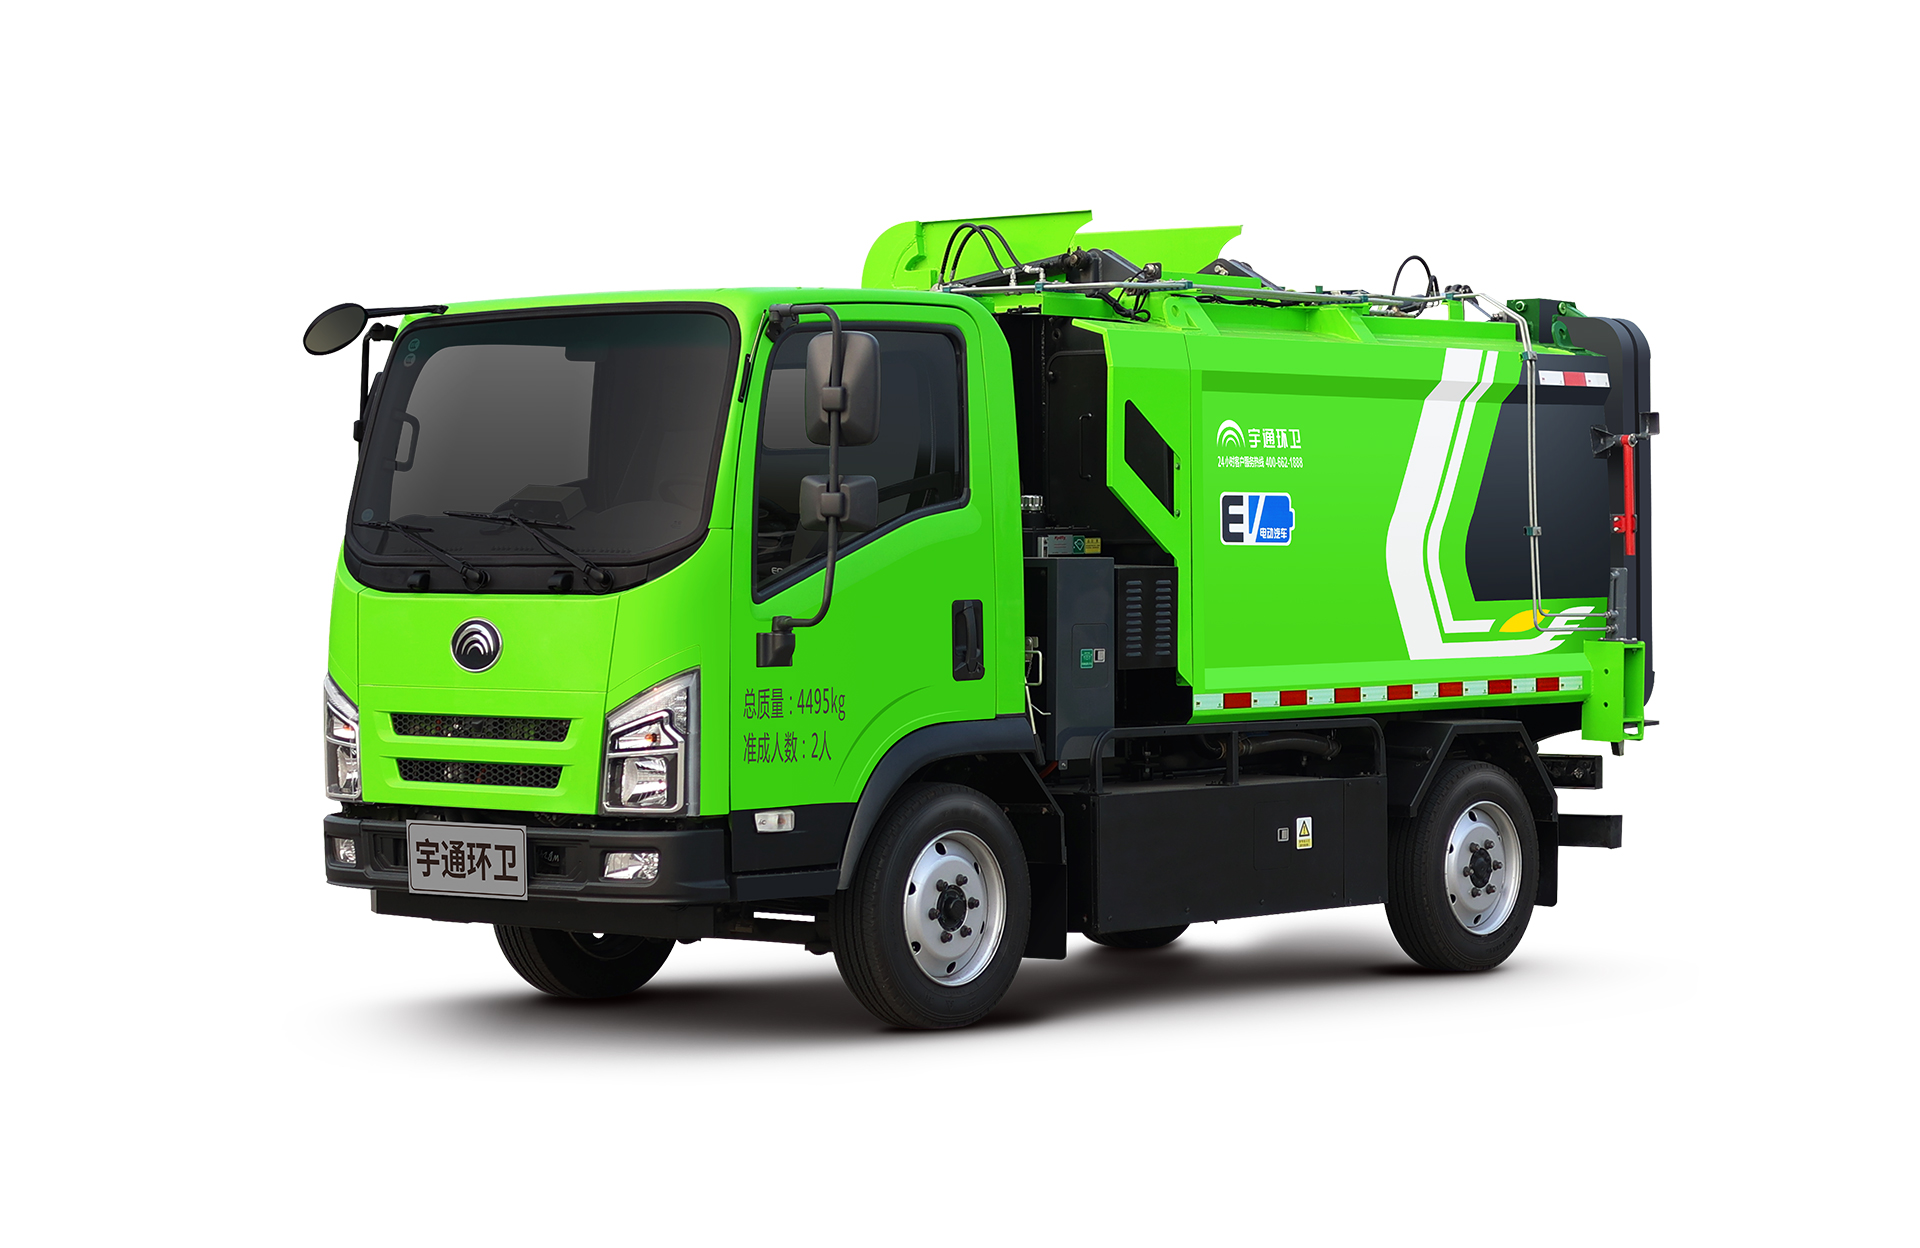 4t純電動自裝卸式垃圾車 宇通環衛自裝卸式垃圾車主要具備小巧靈活、密封性、裝載能力強等主要特點。